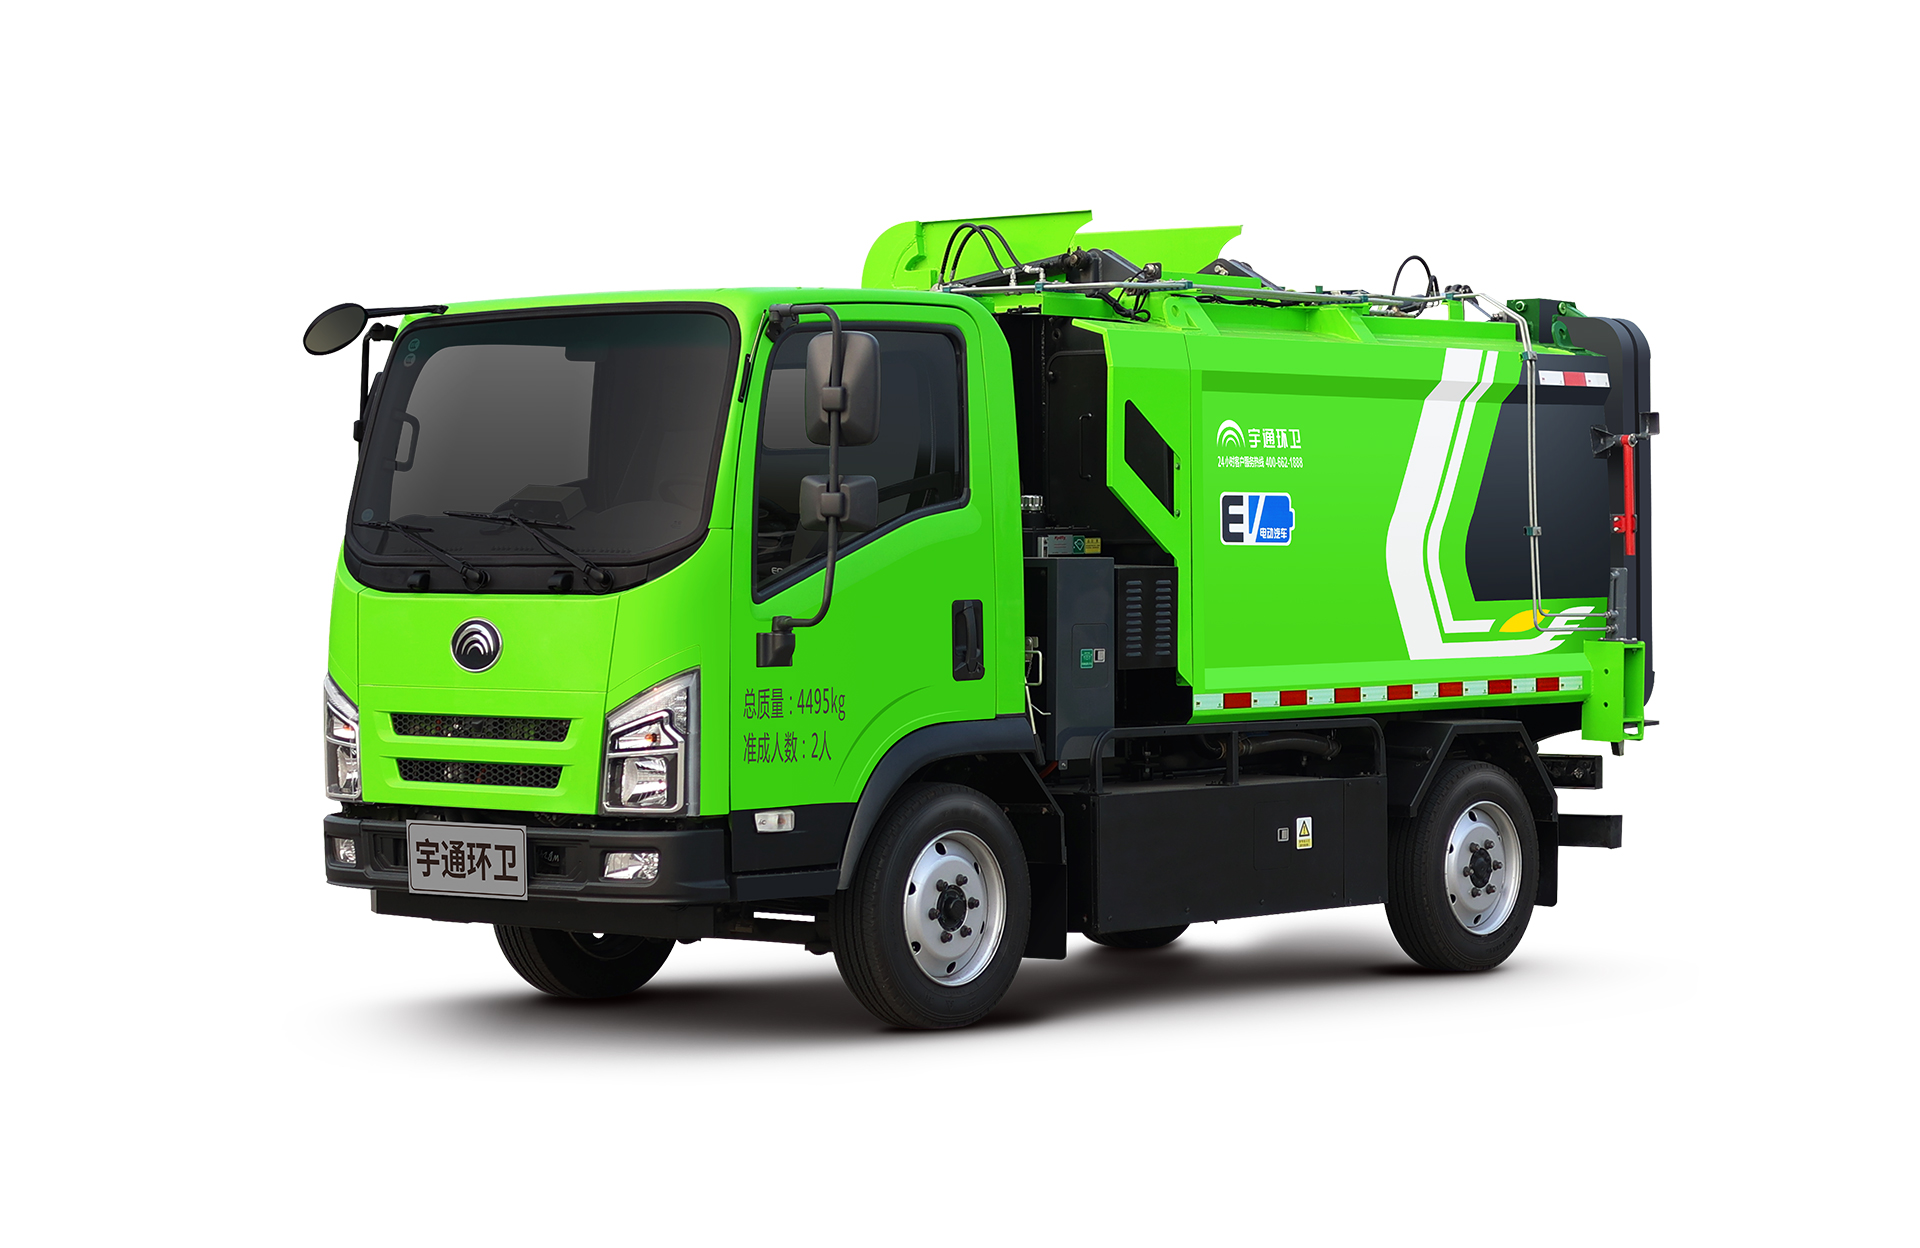 4t純電動自裝卸式垃圾車 宇通環衛自裝卸式垃圾車主要具備小巧靈活、密封性、裝載能力強等主要特點。